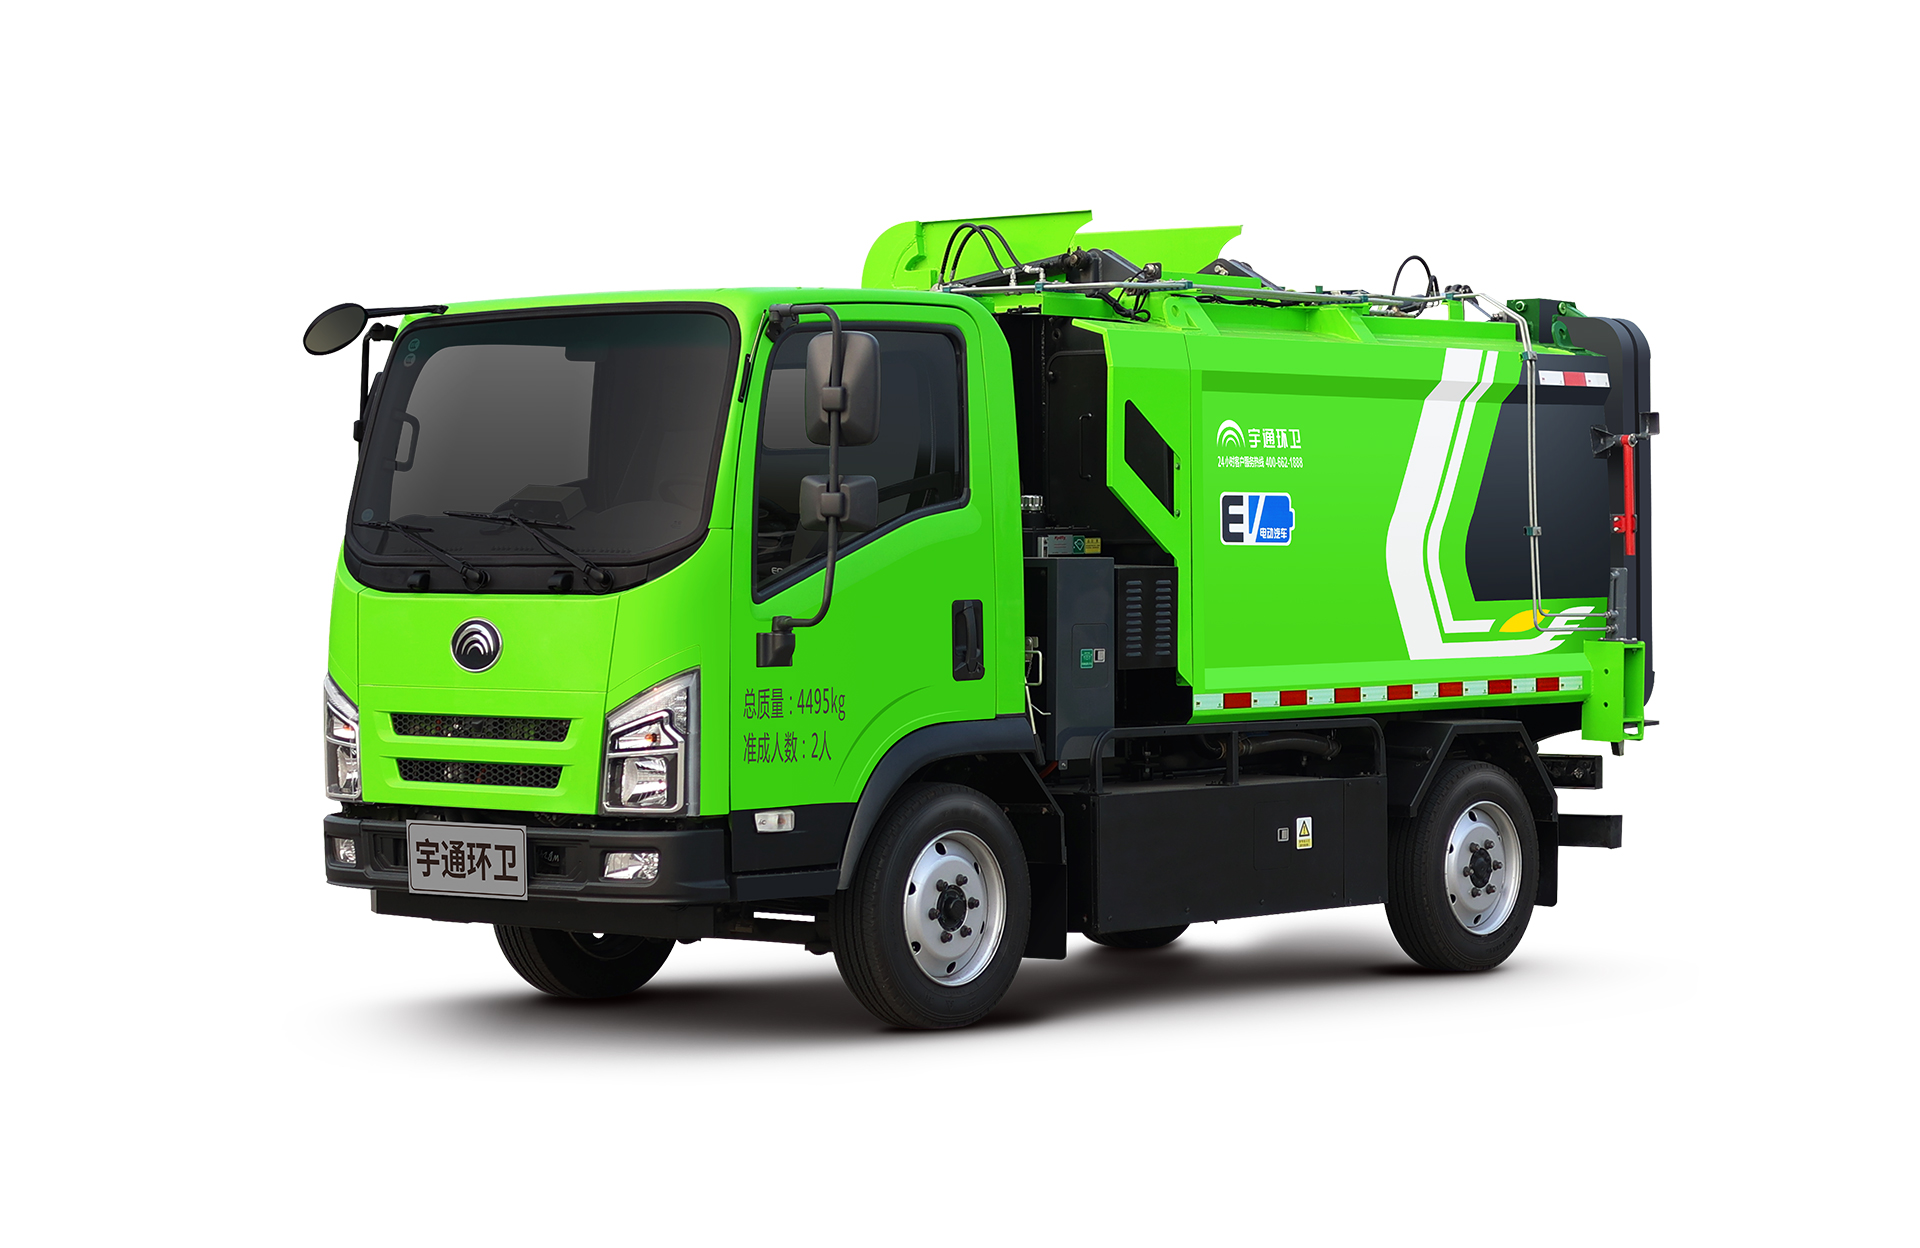 4t純電動自裝卸式垃圾車 宇通環衛自裝卸式垃圾車主要具備小巧靈活、密封性、裝載能力強等主要特點。